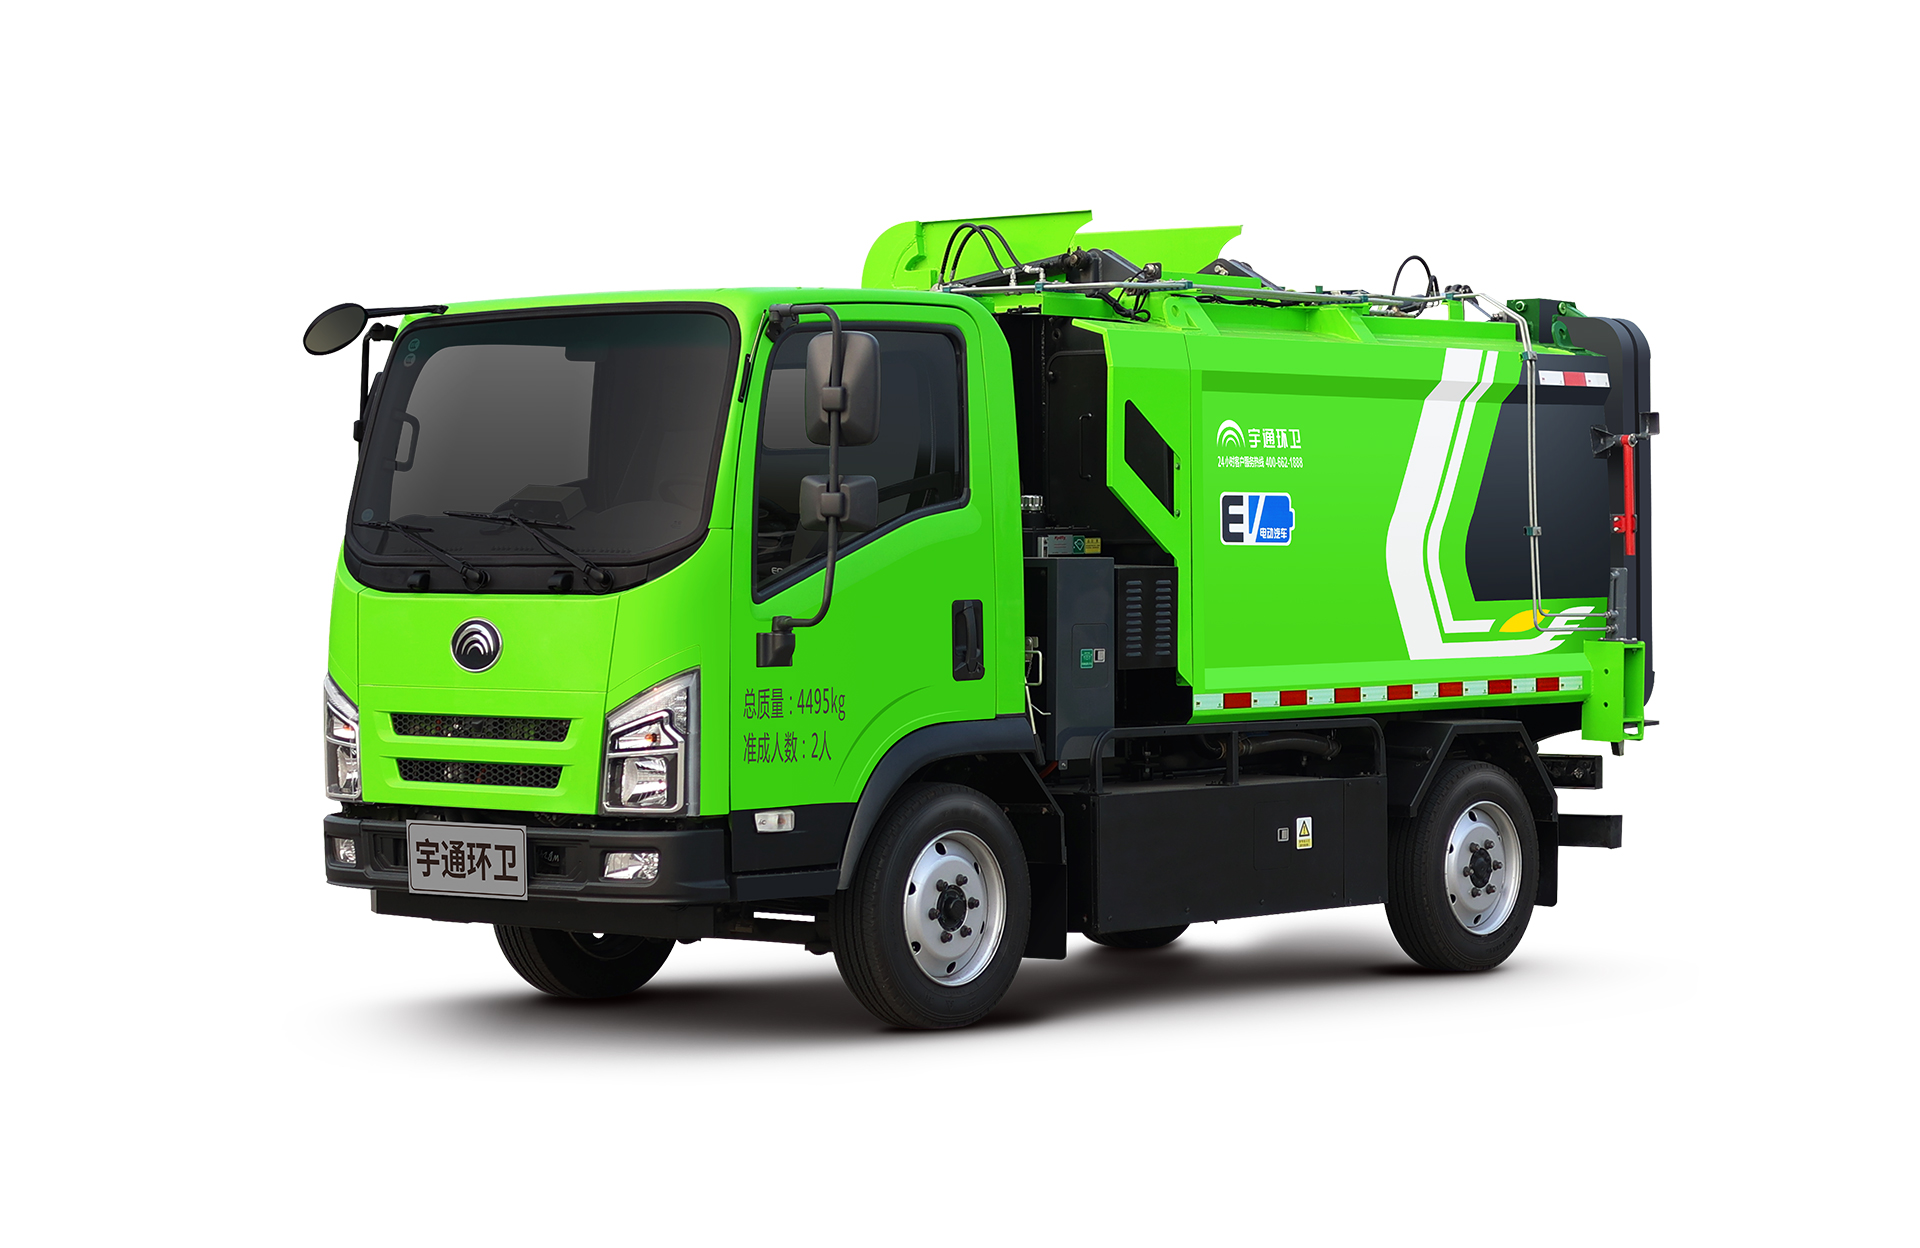 4t純電動自裝卸式垃圾車 宇通環衛自裝卸式垃圾車主要具備小巧靈活、密封性、裝載能力強等主要特點。